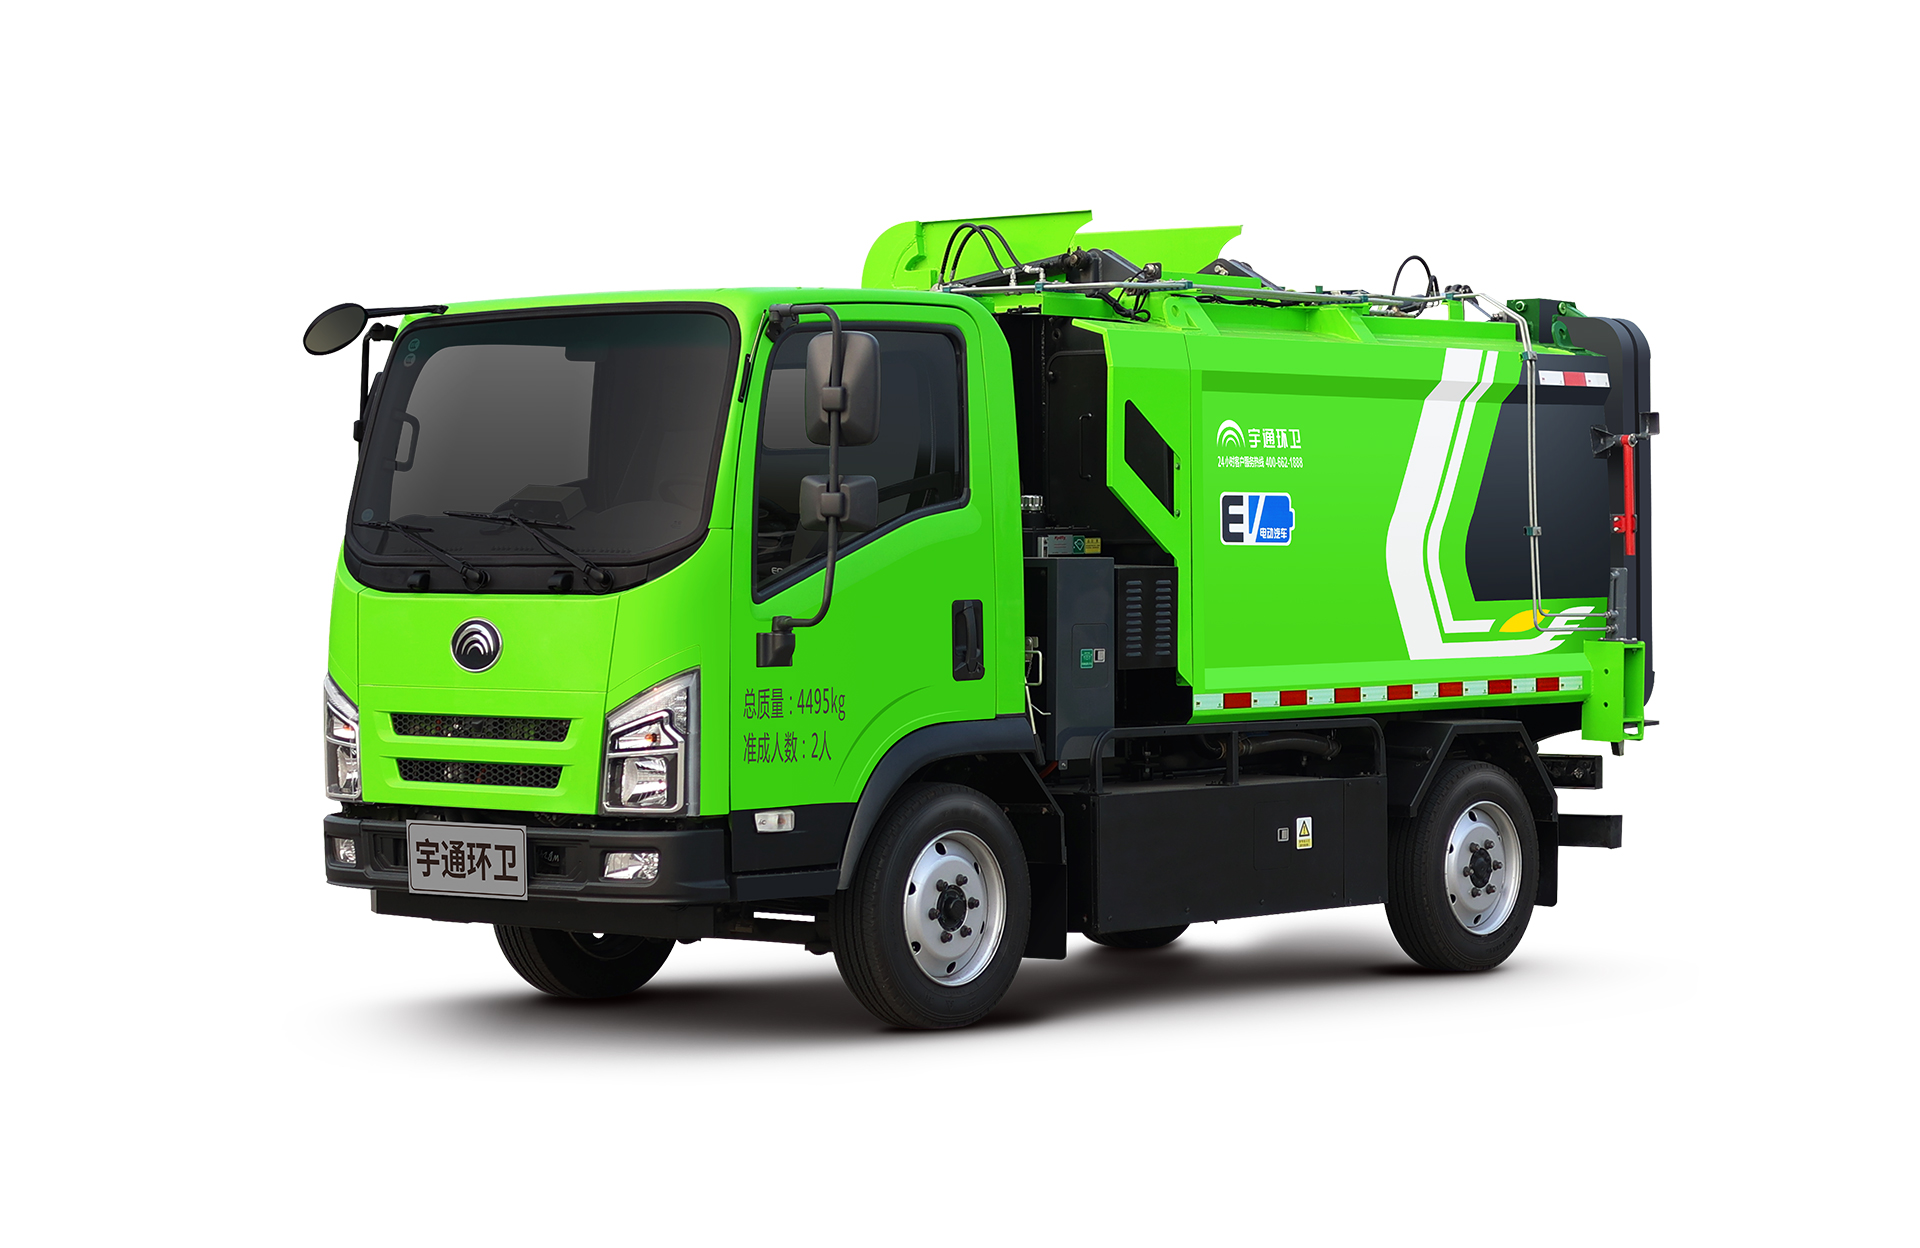 4t純電動自裝卸式垃圾車 宇通環衛自裝卸式垃圾車主要具備小巧靈活、密封性、裝載能力強等主要特點。